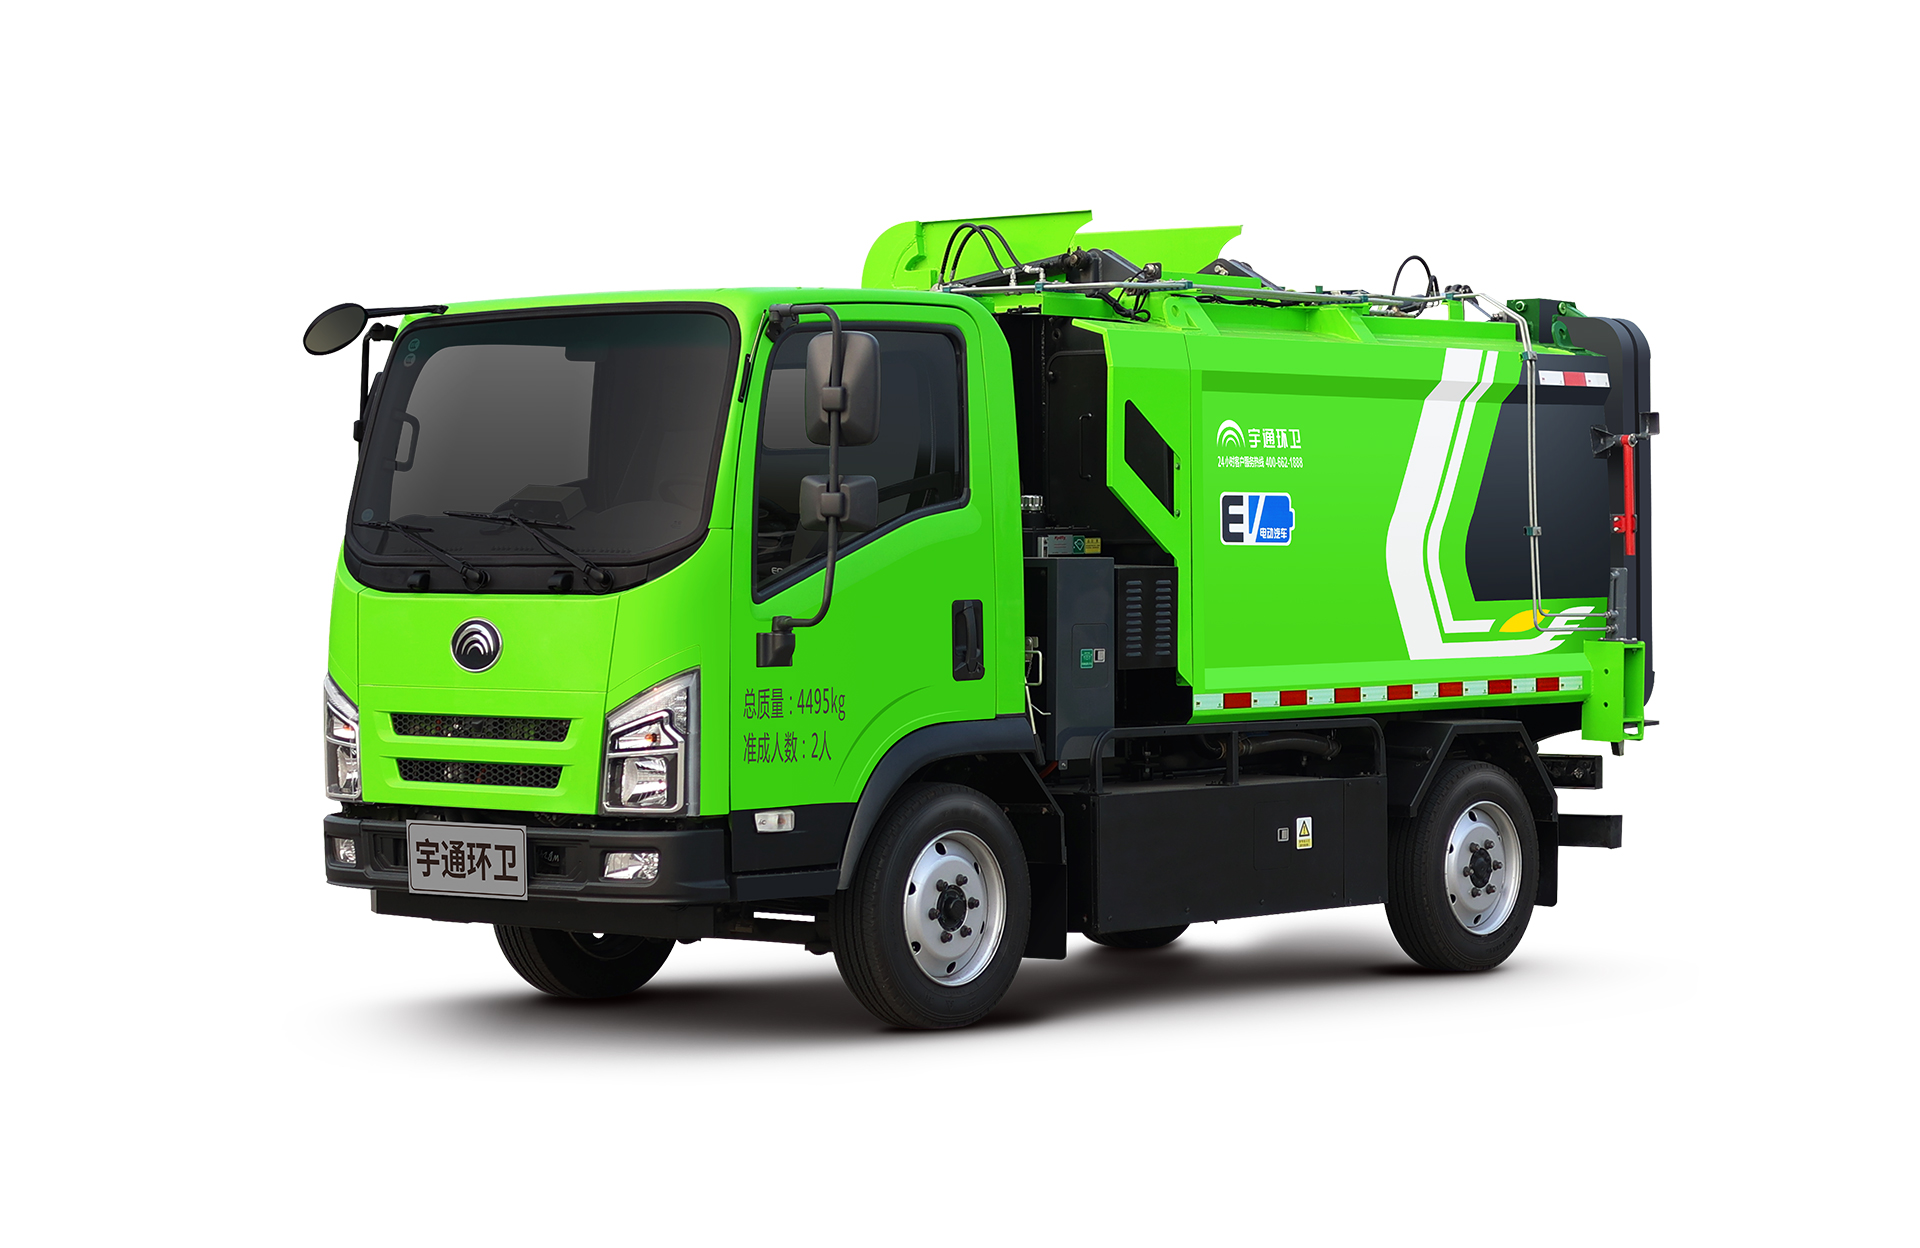 4t純電動自裝卸式垃圾車 宇通環衛自裝卸式垃圾車主要具備小巧靈活、密封性、裝載能力強等主要特點。